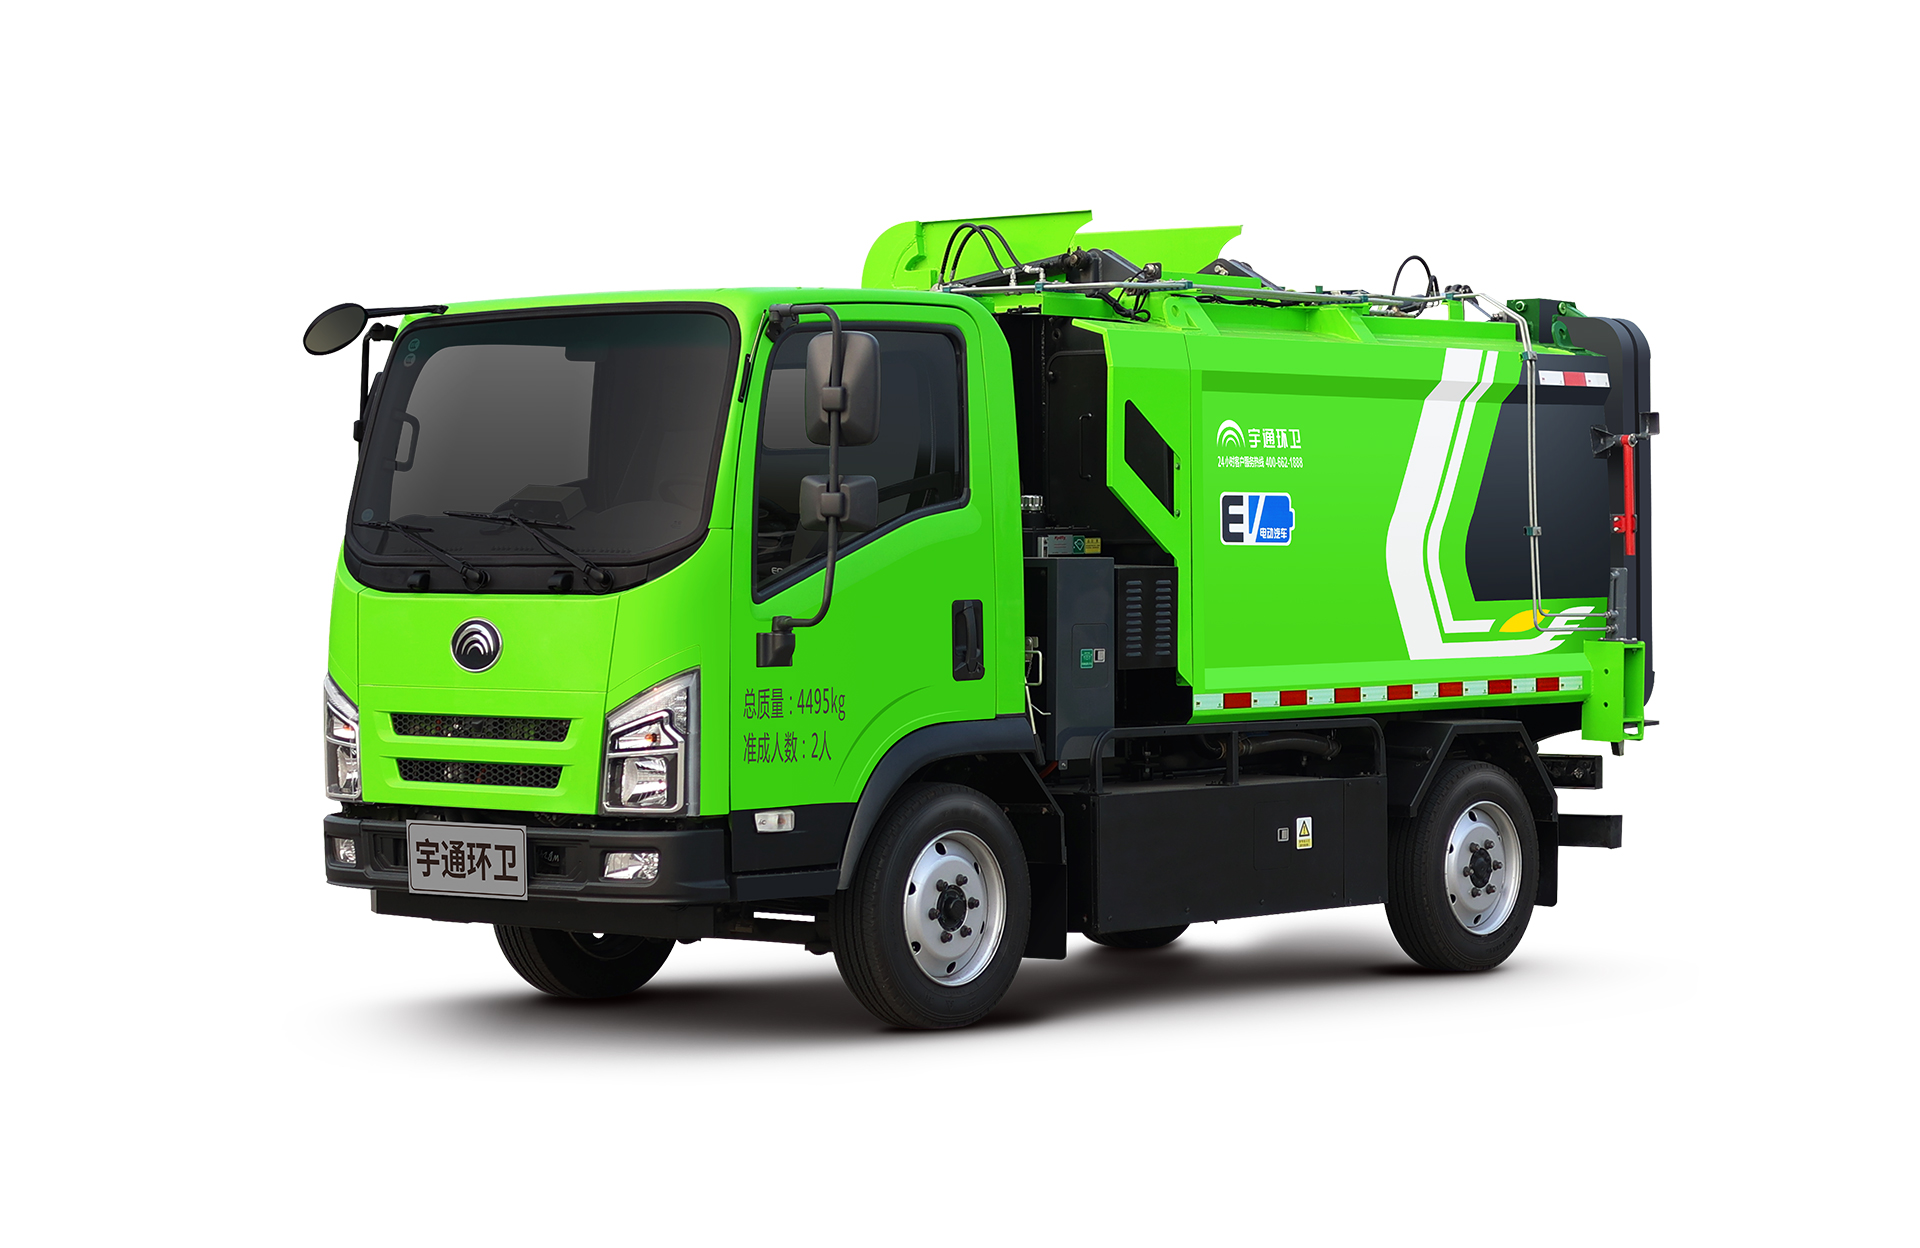 4t純電動自裝卸式垃圾車 宇通環衛自裝卸式垃圾車主要具備小巧靈活、密封性、裝載能力強等主要特點。